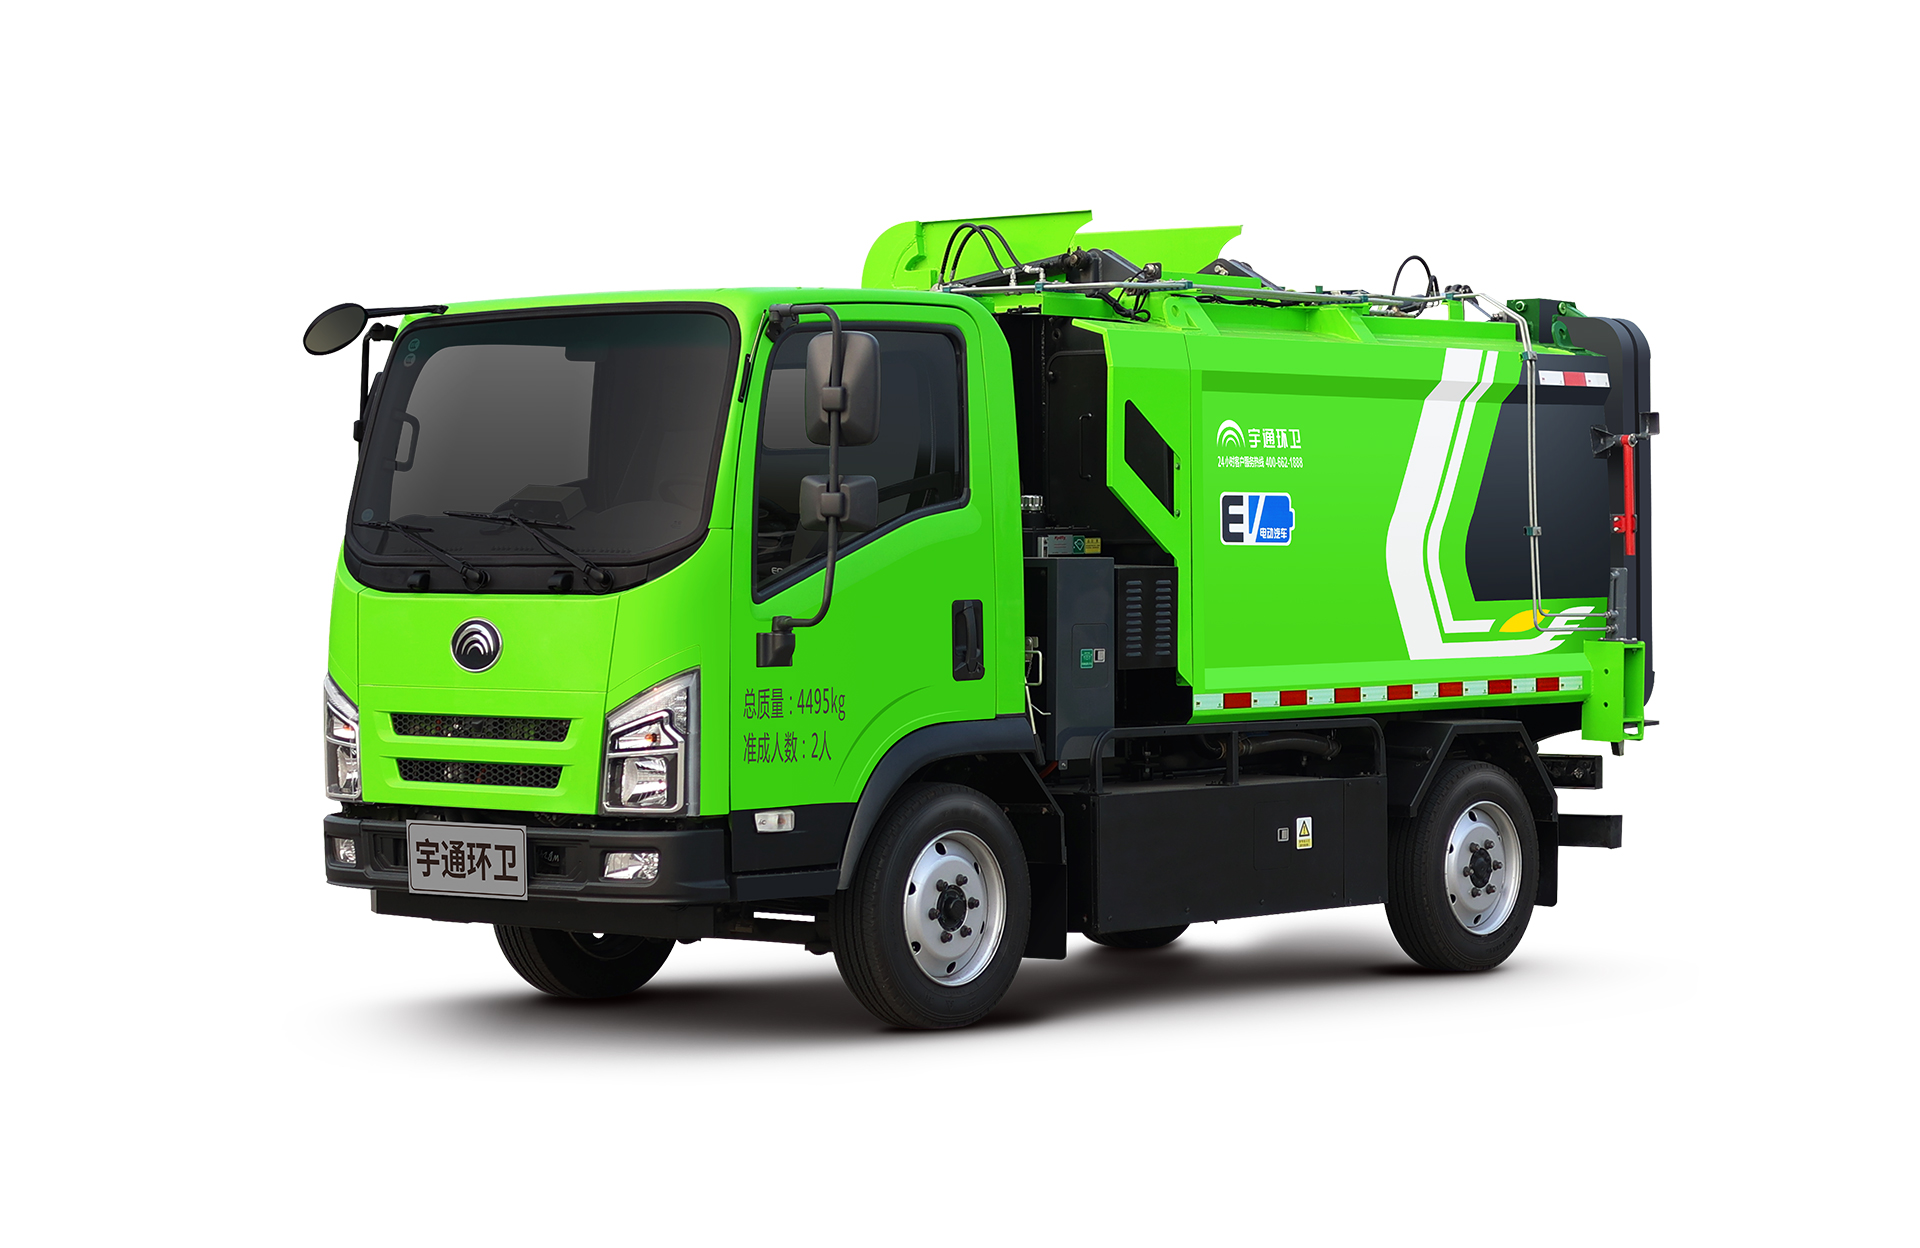 4t純電動自裝卸式垃圾車 宇通環衛自裝卸式垃圾車主要具備小巧靈活、密封性、裝載能力強等主要特點。